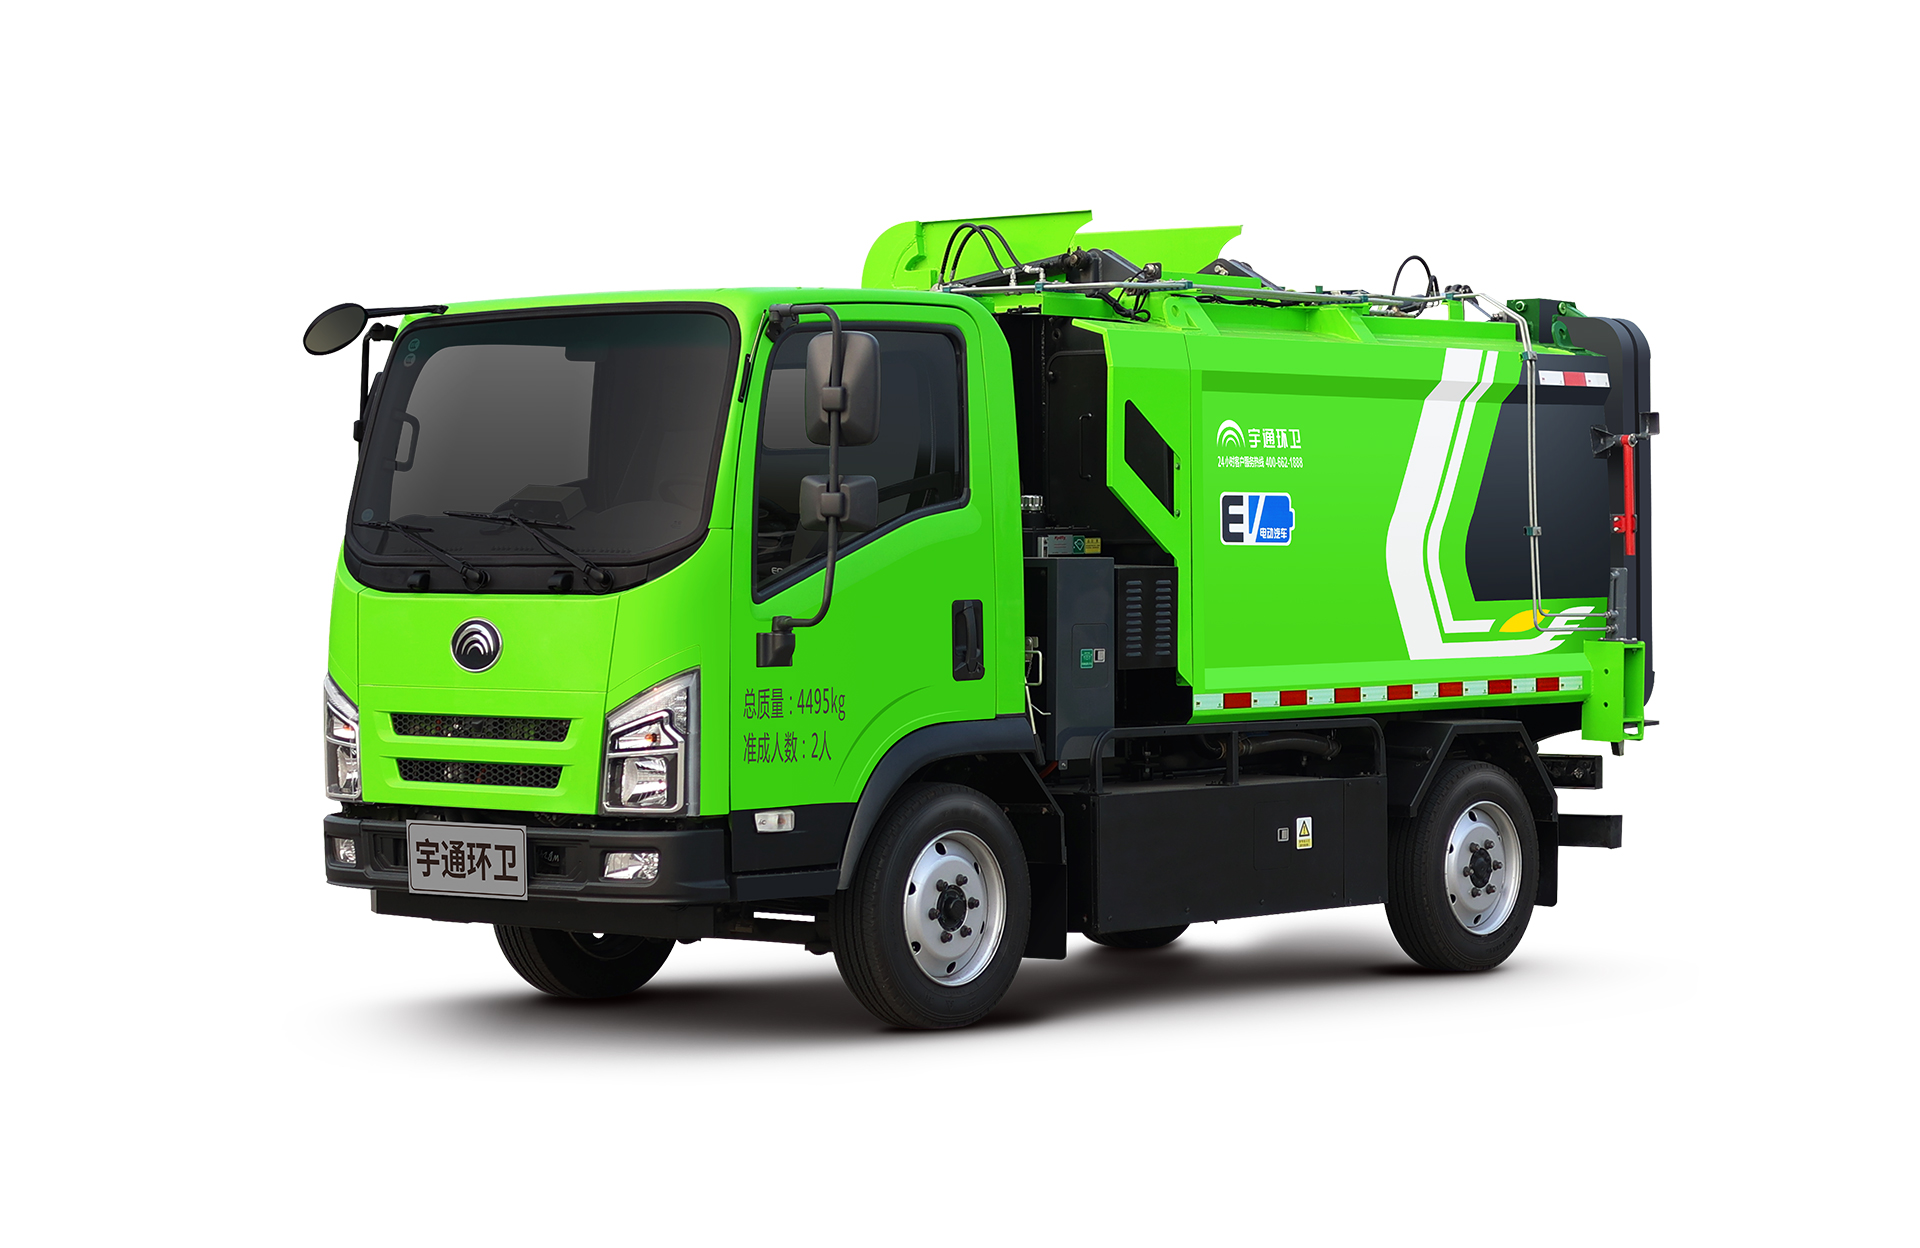 4t純電動自裝卸式垃圾車 宇通環衛自裝卸式垃圾車主要具備小巧靈活、密封性、裝載能力強等主要特點。